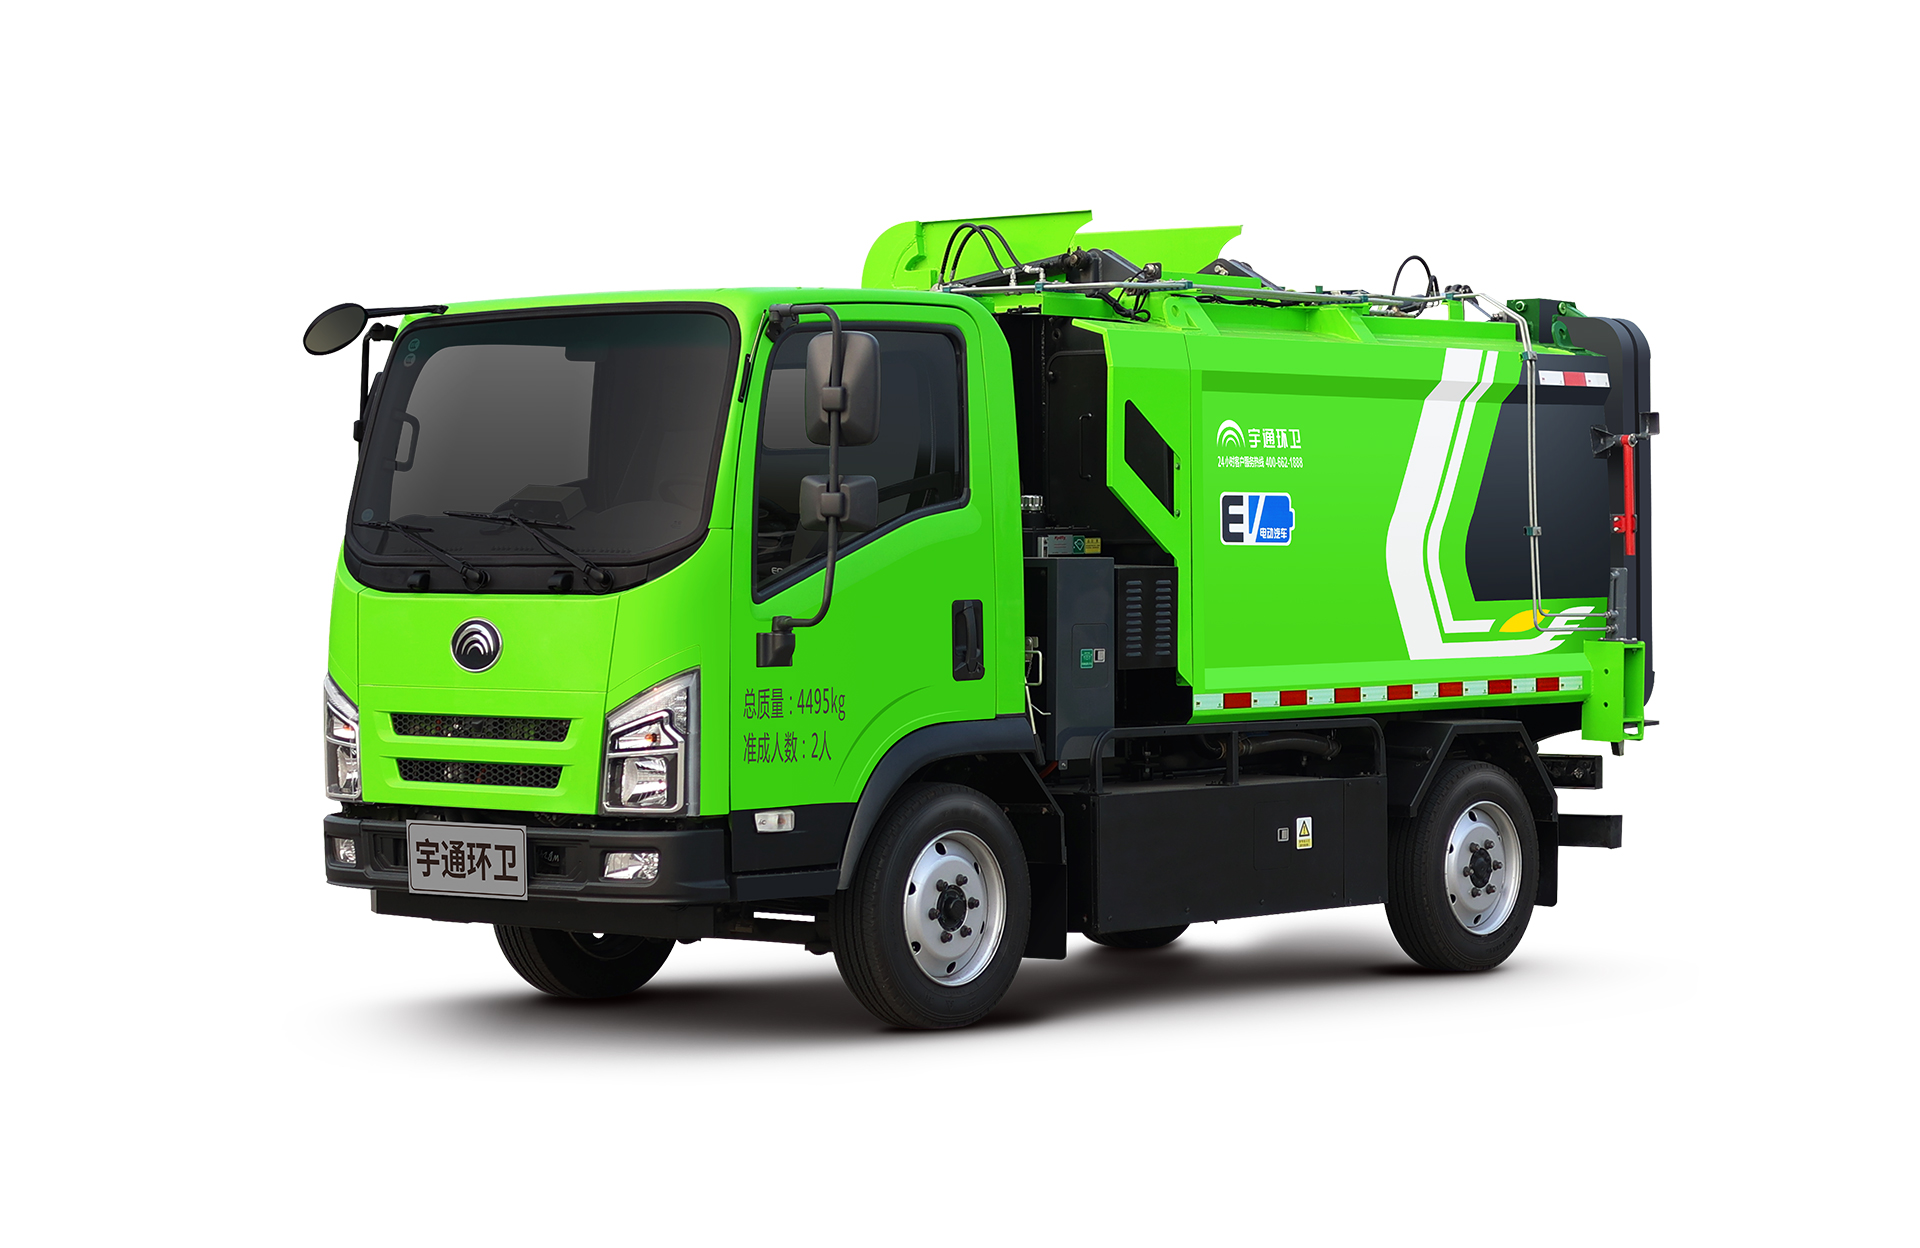 4t純電動自裝卸式垃圾車 宇通環衛自裝卸式垃圾車主要具備小巧靈活、密封性、裝載能力強等主要特點。